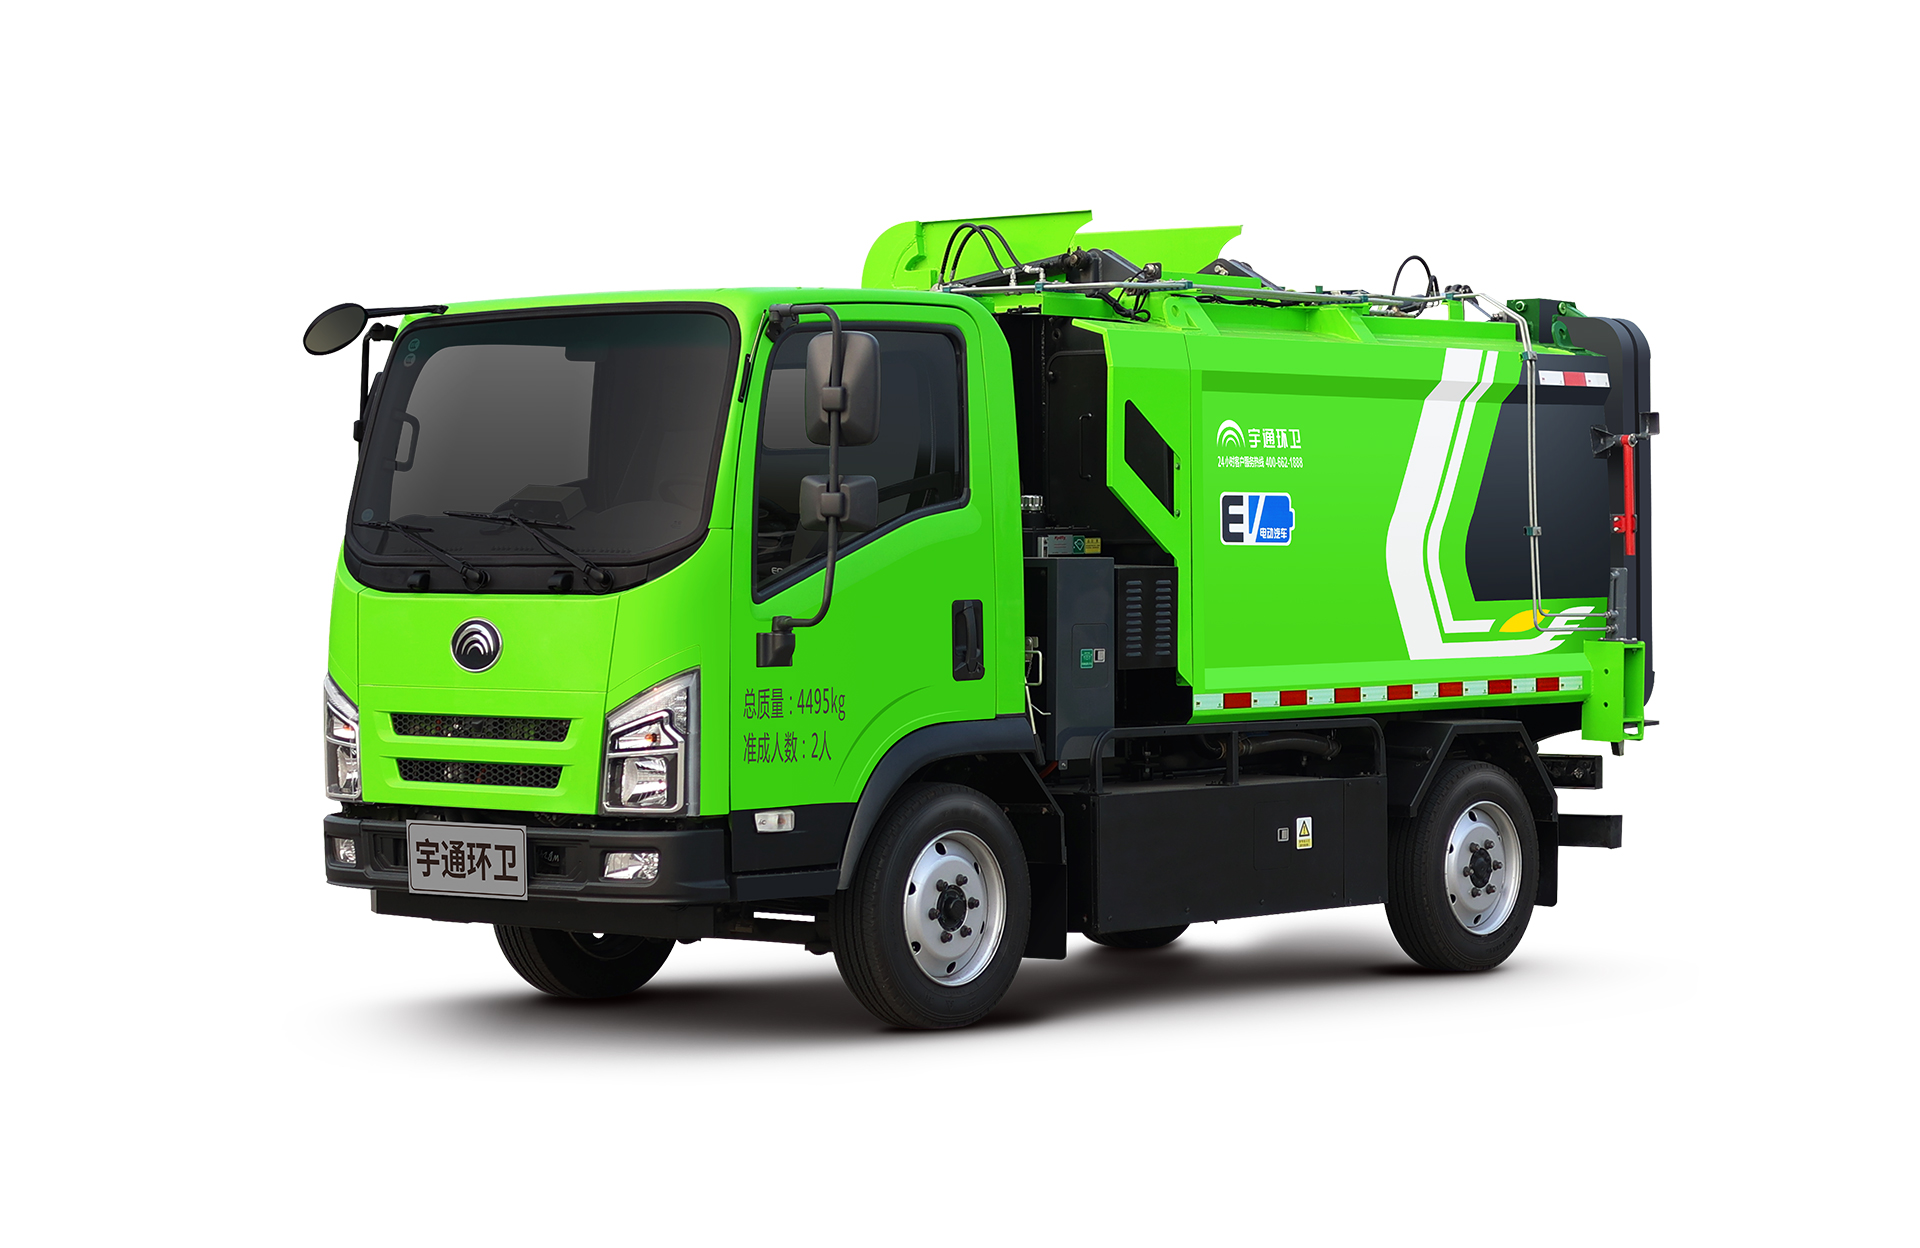 4t純電動自裝卸式垃圾車 宇通環衛自裝卸式垃圾車主要具備小巧靈活、密封性、裝載能力強等主要特點。